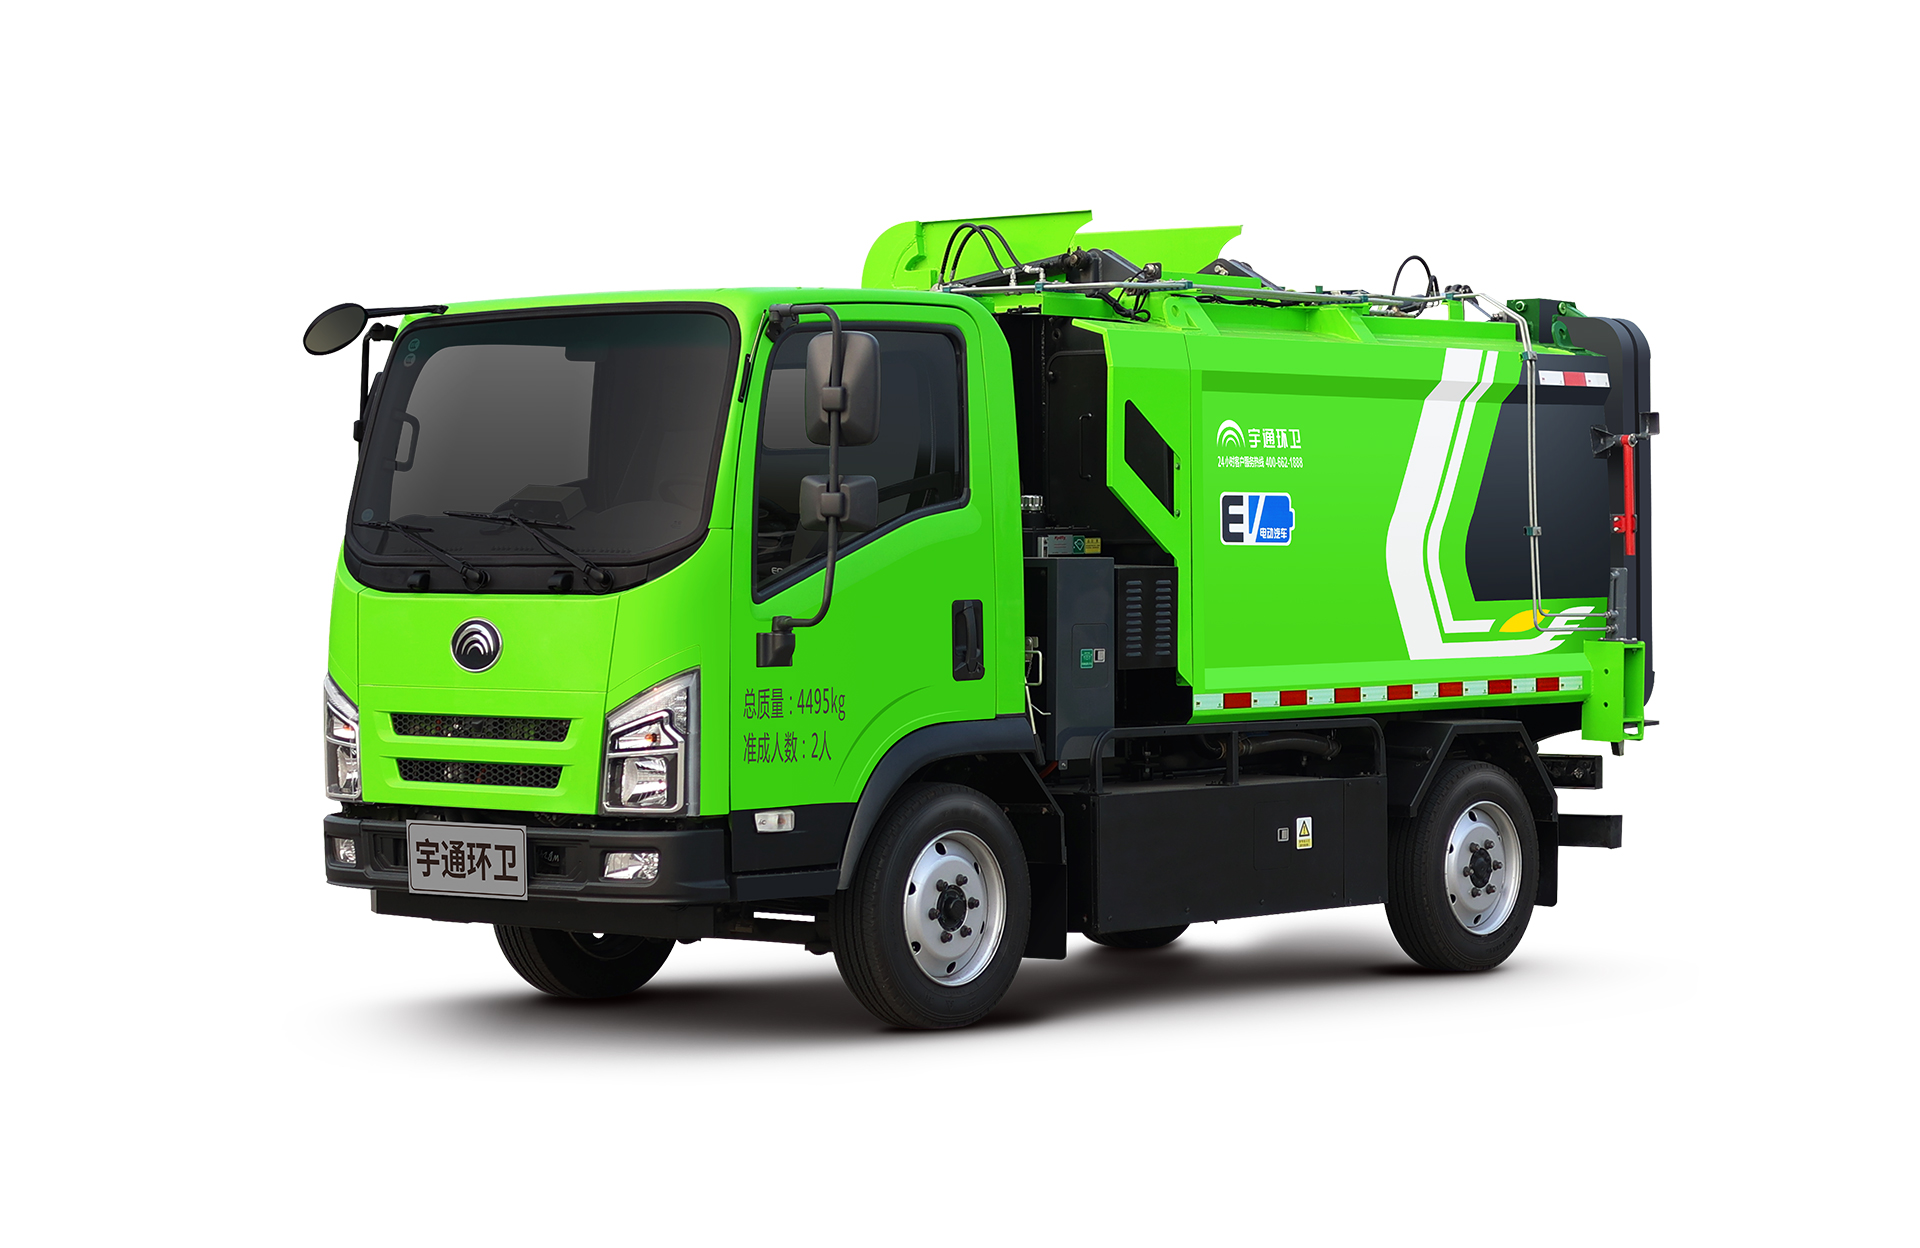 4t純電動自裝卸式垃圾車 宇通環衛自裝卸式垃圾車主要具備小巧靈活、密封性、裝載能力強等主要特點。